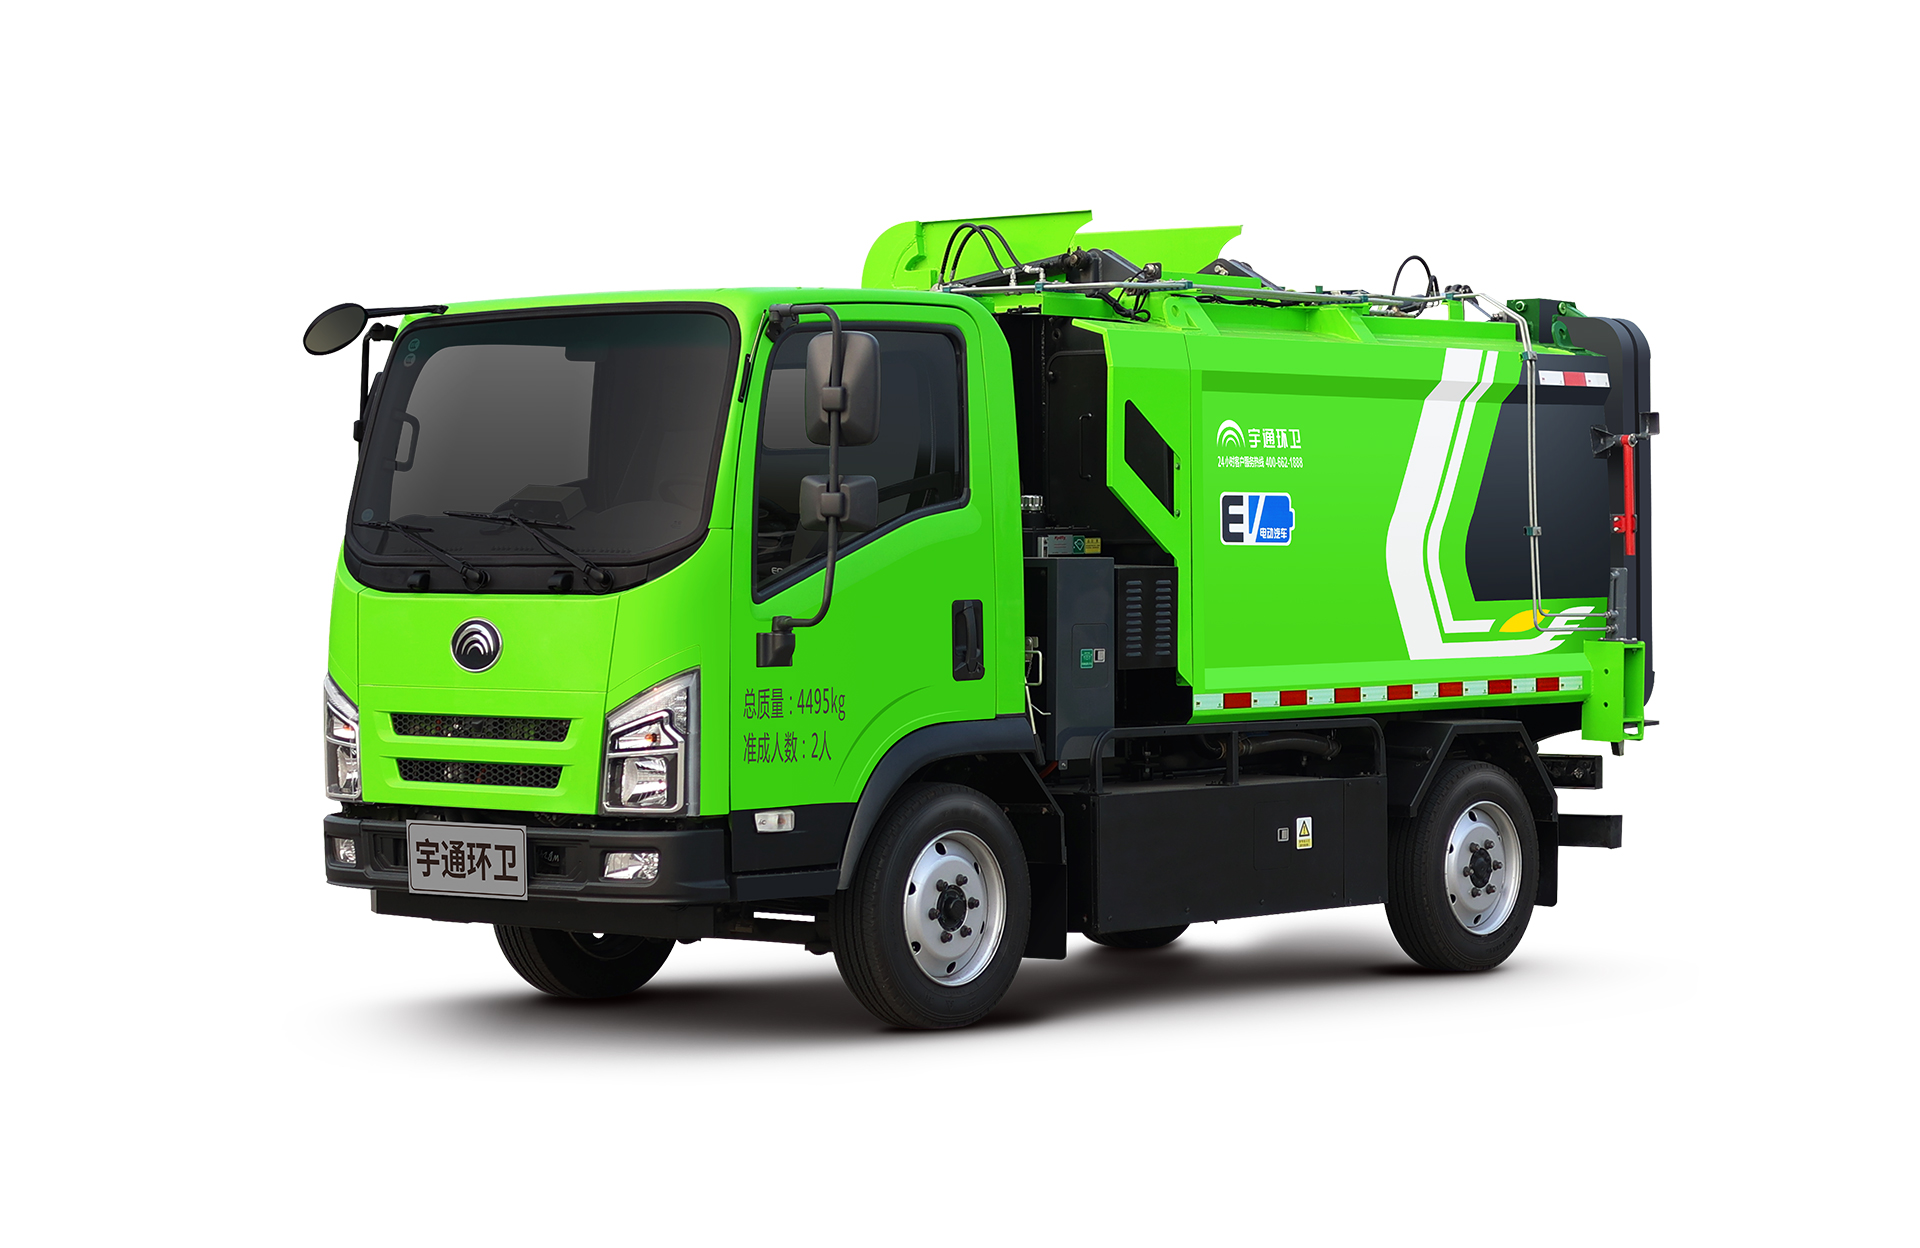 4t純電動自裝卸式垃圾車 宇通環衛自裝卸式垃圾車主要具備小巧靈活、密封性、裝載能力強等主要特點。